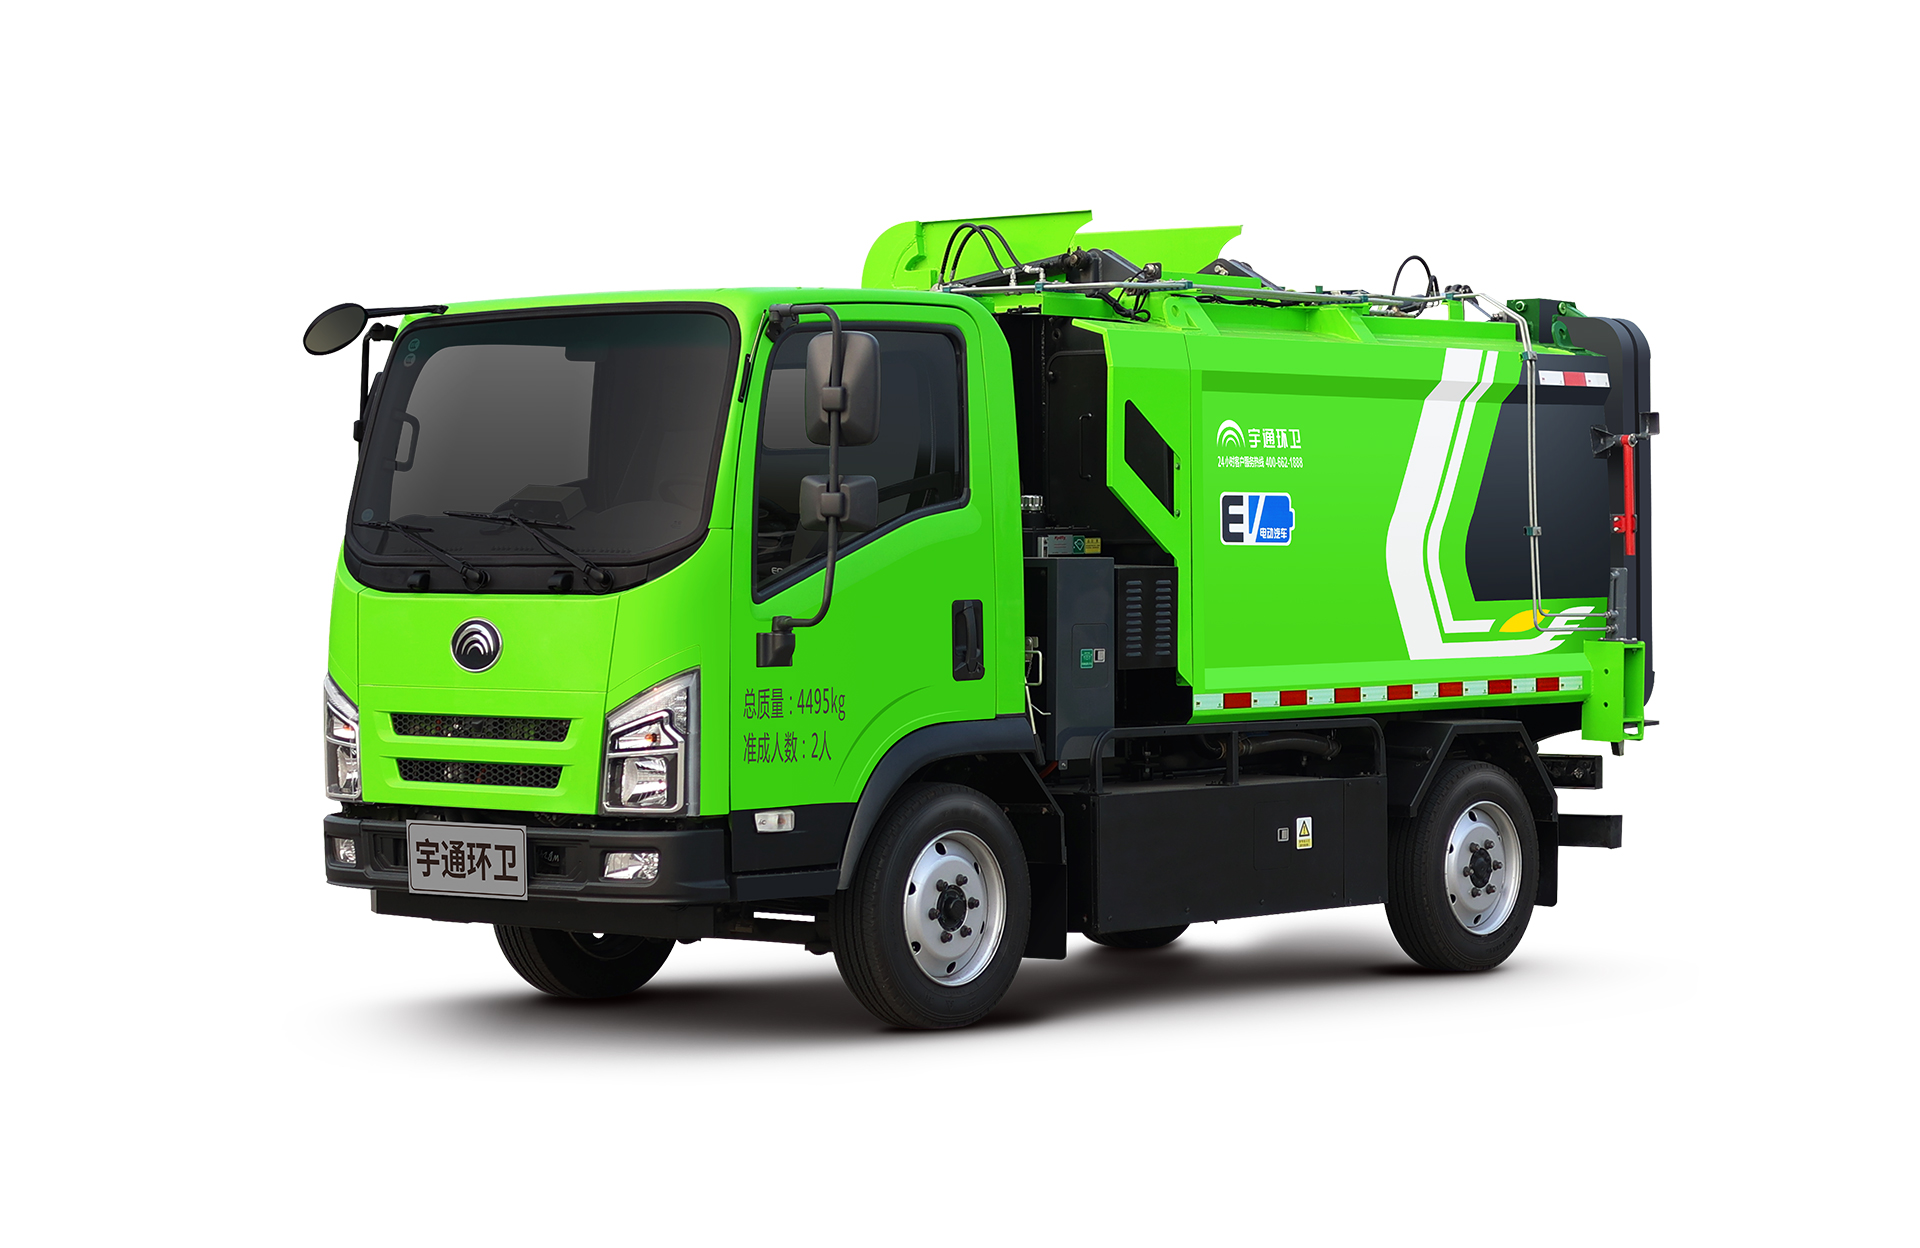 4t純電動自裝卸式垃圾車 宇通環衛自裝卸式垃圾車主要具備小巧靈活、密封性、裝載能力強等主要特點。